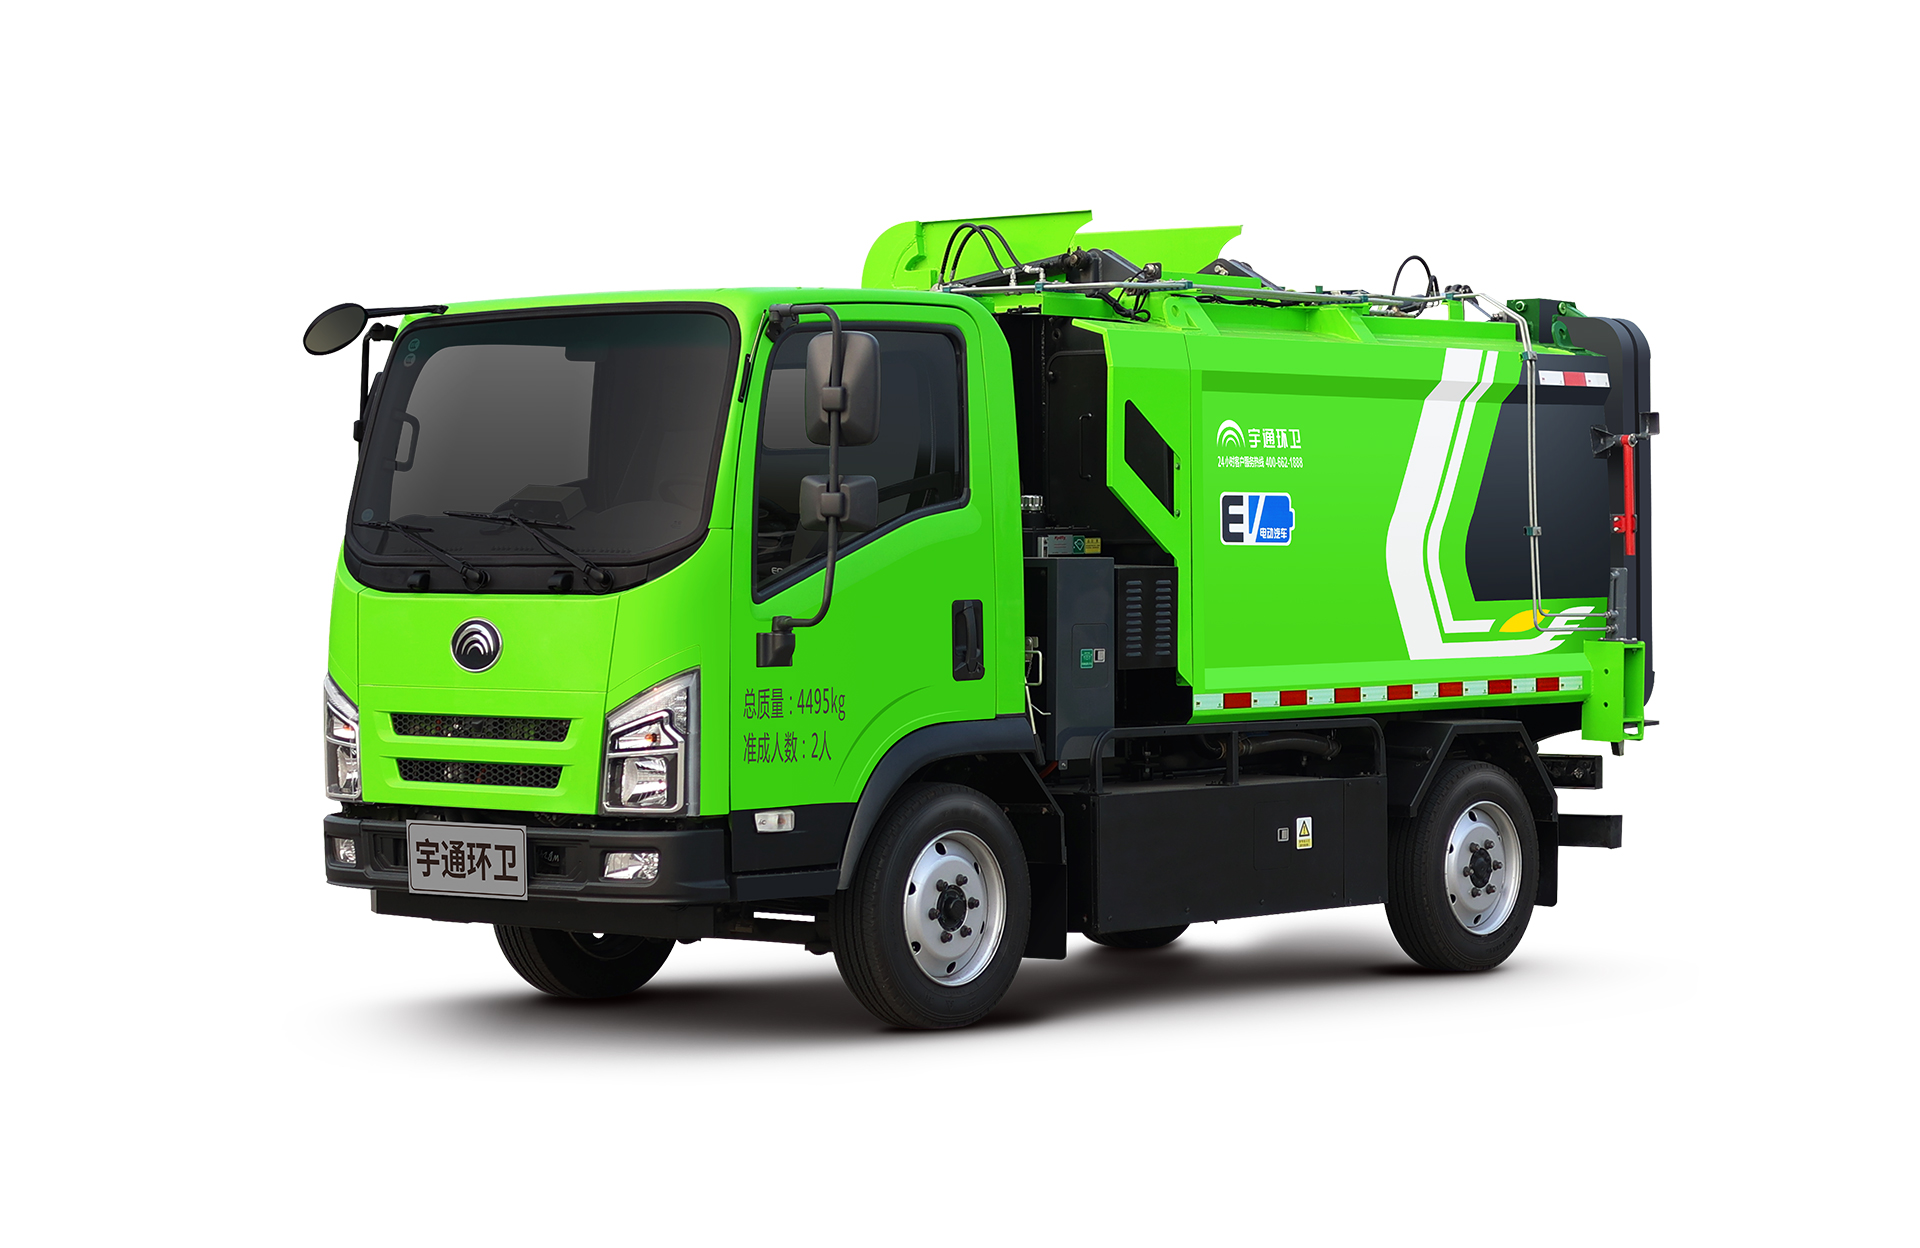 4t純電動自裝卸式垃圾車 宇通環衛自裝卸式垃圾車主要具備小巧靈活、密封性、裝載能力強等主要特點。